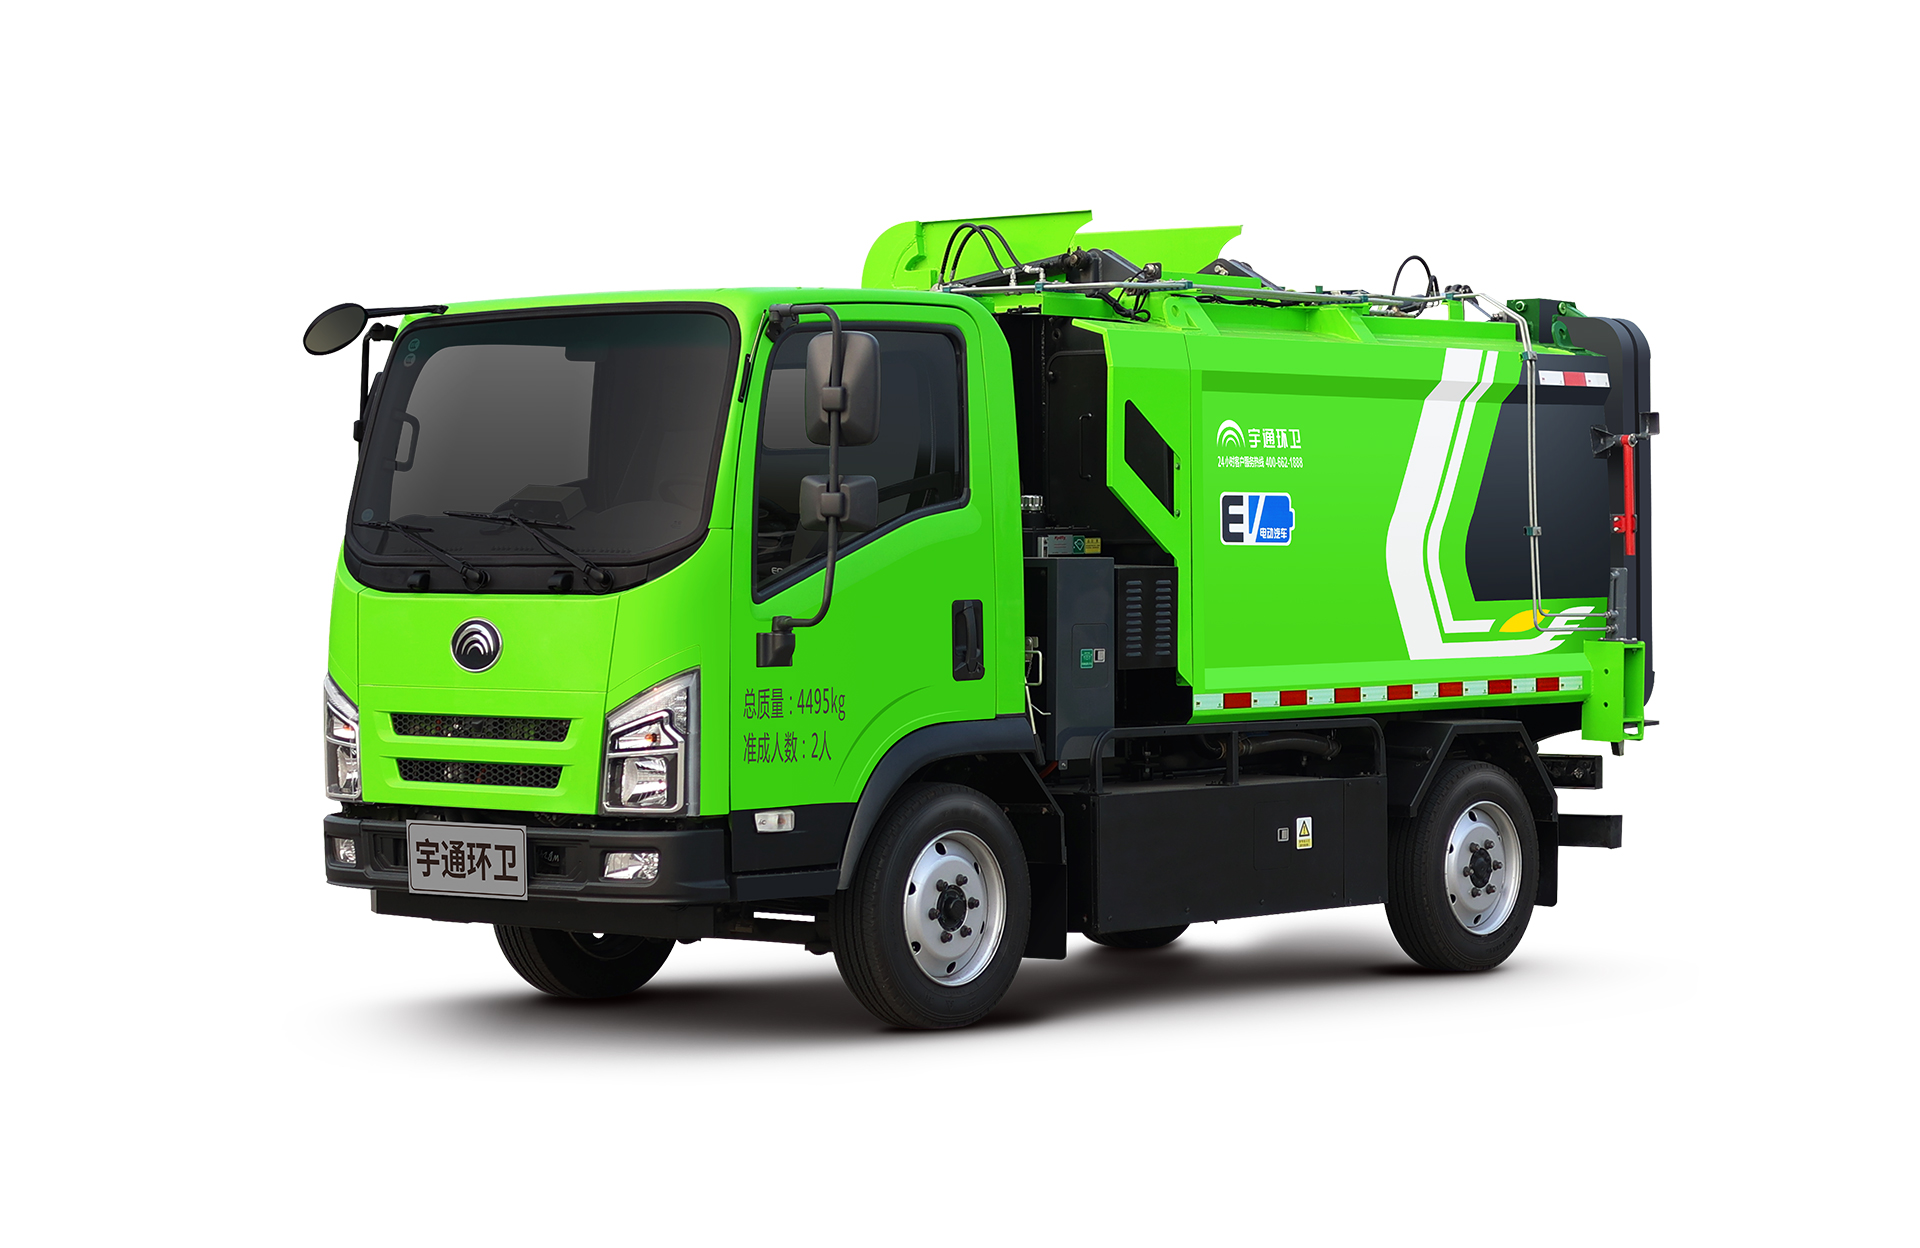 4t純電動自裝卸式垃圾車 宇通環衛自裝卸式垃圾車主要具備小巧靈活、密封性、裝載能力強等主要特點。